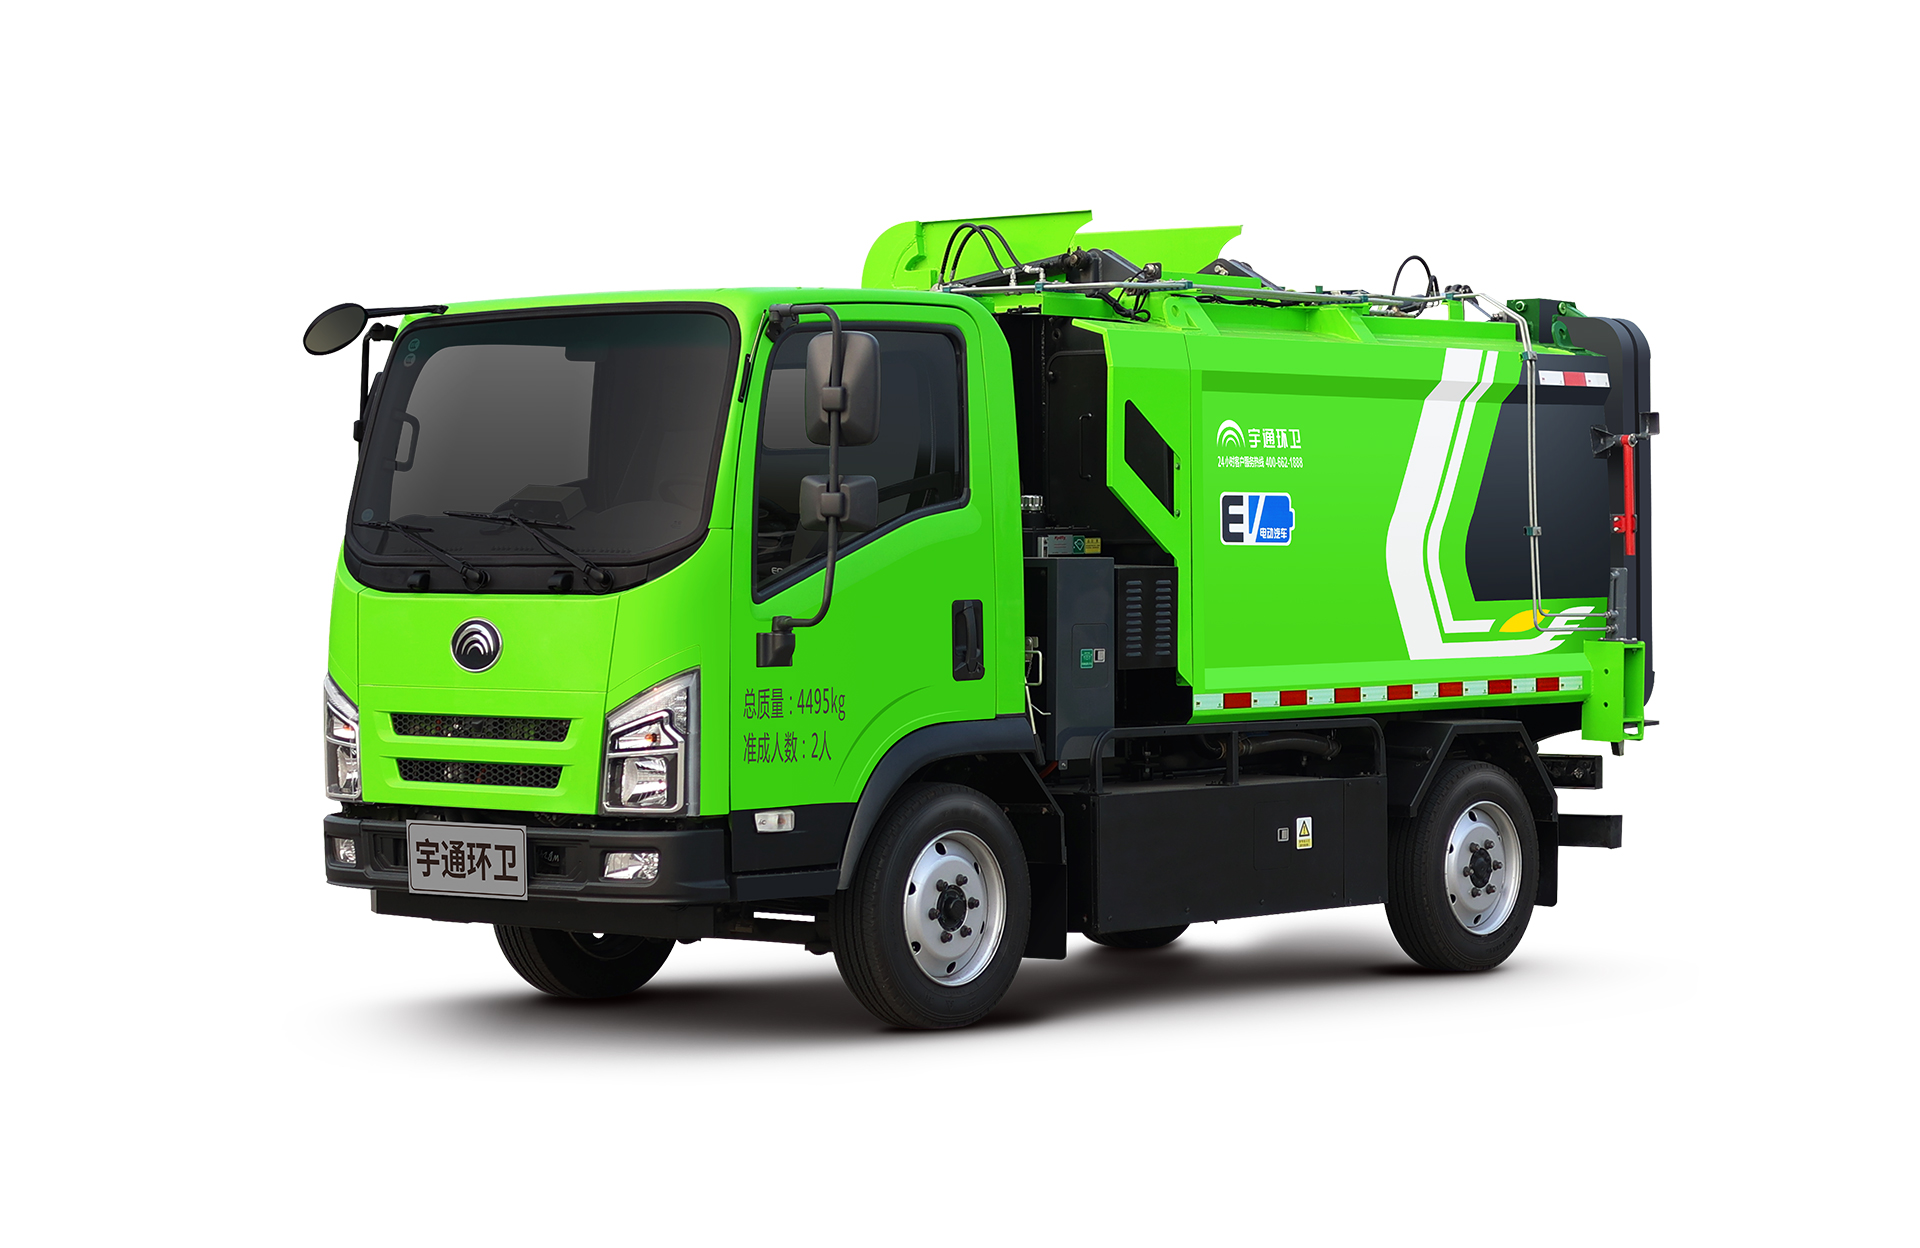 4t純電動自裝卸式垃圾車 宇通環衛自裝卸式垃圾車主要具備小巧靈活、密封性、裝載能力強等主要特點。